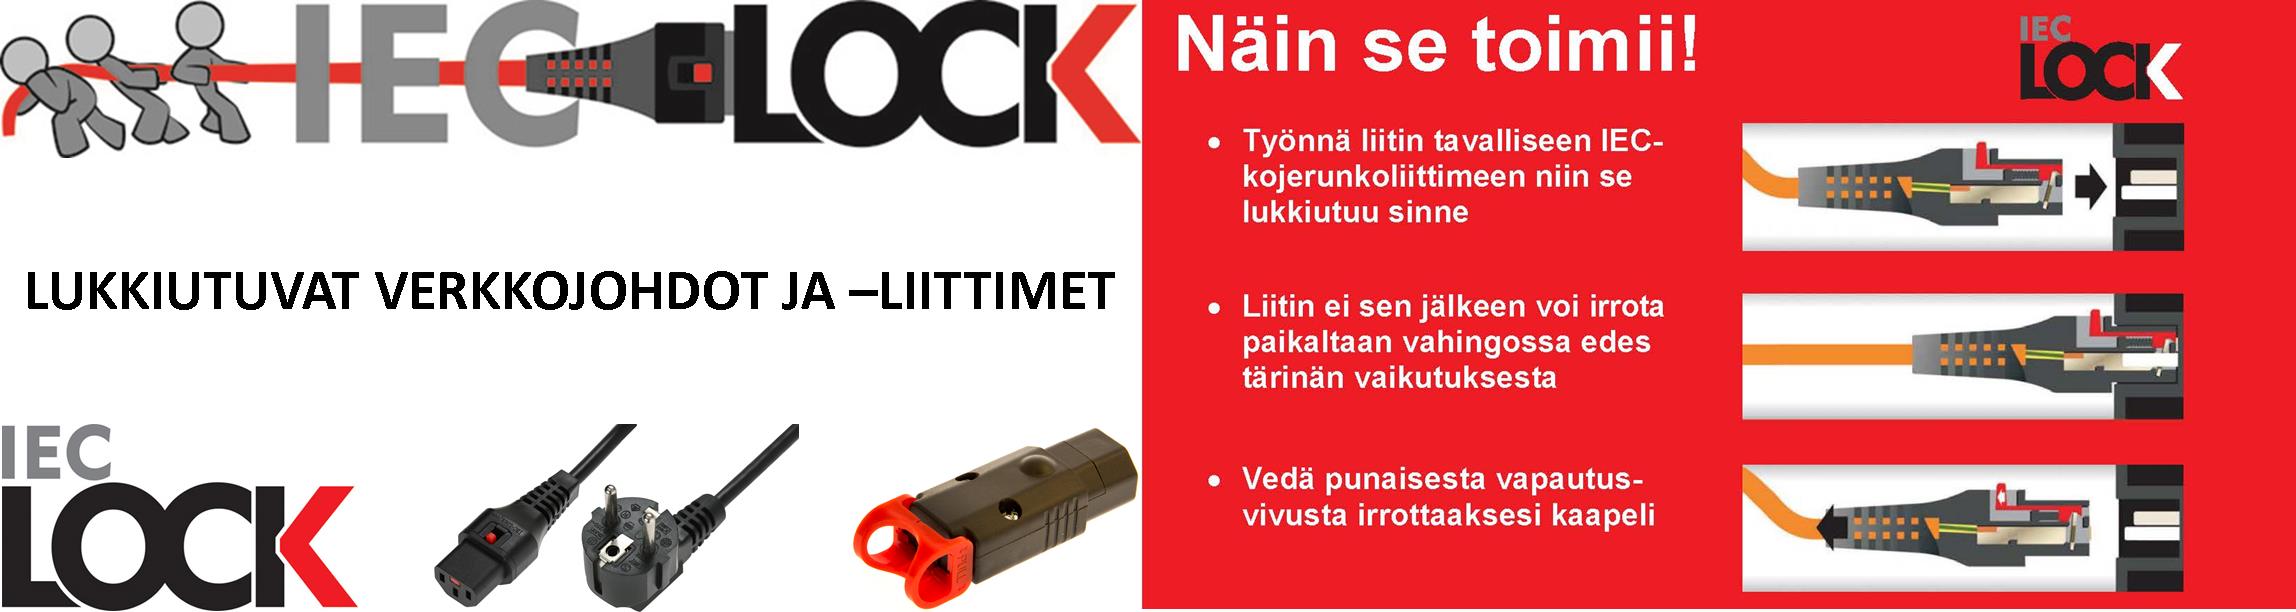 IEC LOCK verkkojohtoja voidaan käyttää kaikkien standardi IEC-liittimellä varustettujen laitteiden sähkönsyöttöön estämään tahaton irtoaminen esim. tärinän johdosta.